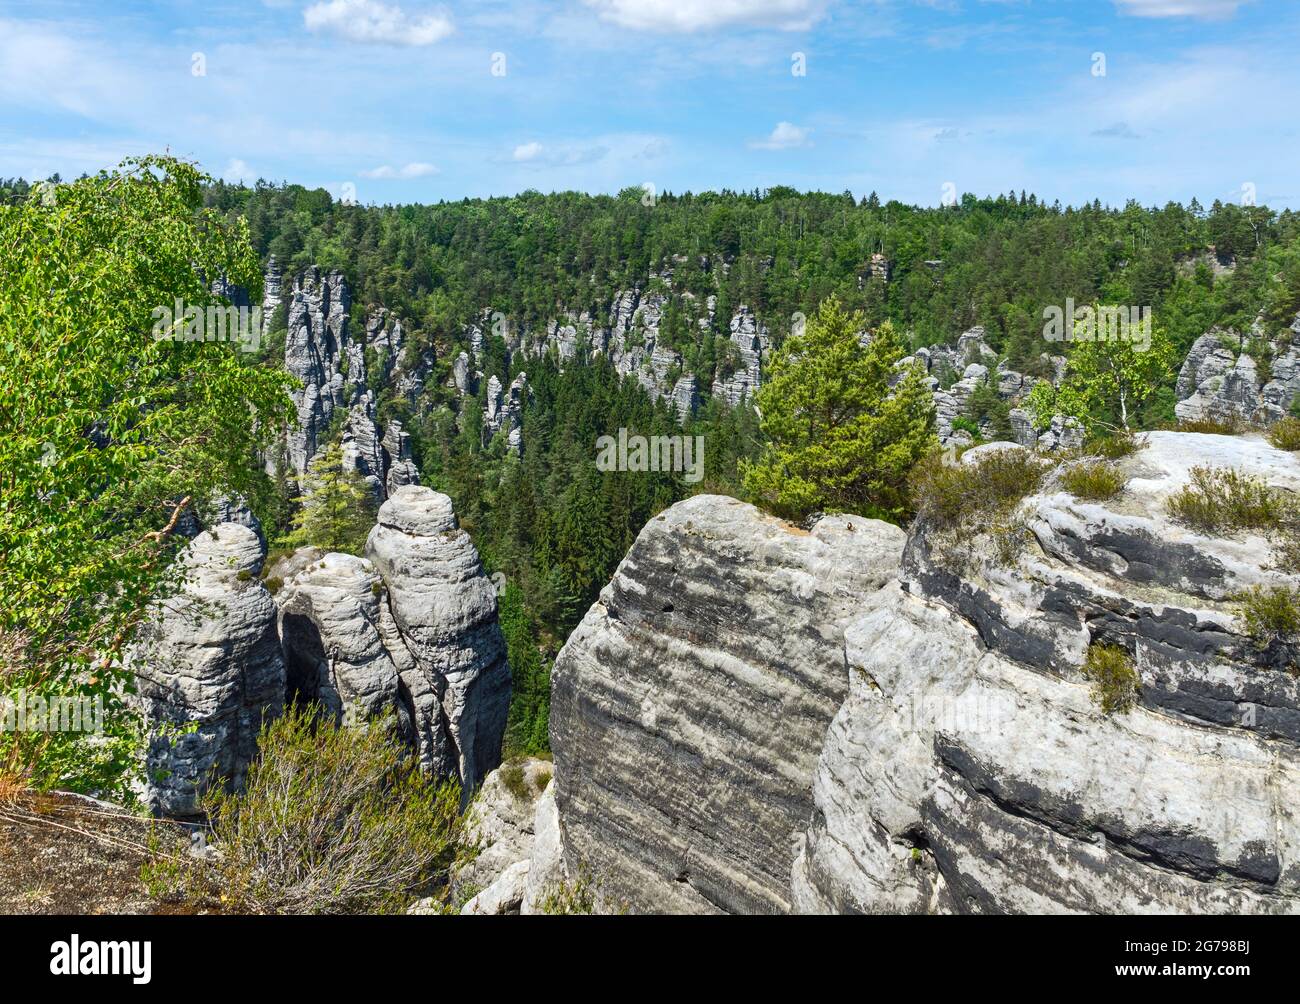 Il Bastei è una formazione rocciosa con una piattaforma di osservazione in Svizzera sassone sulla riva destra dell'Elba nella zona del comune di Lohmen. E' una delle attrazioni turistiche più popolari della Svizzera sassone. Foto Stock